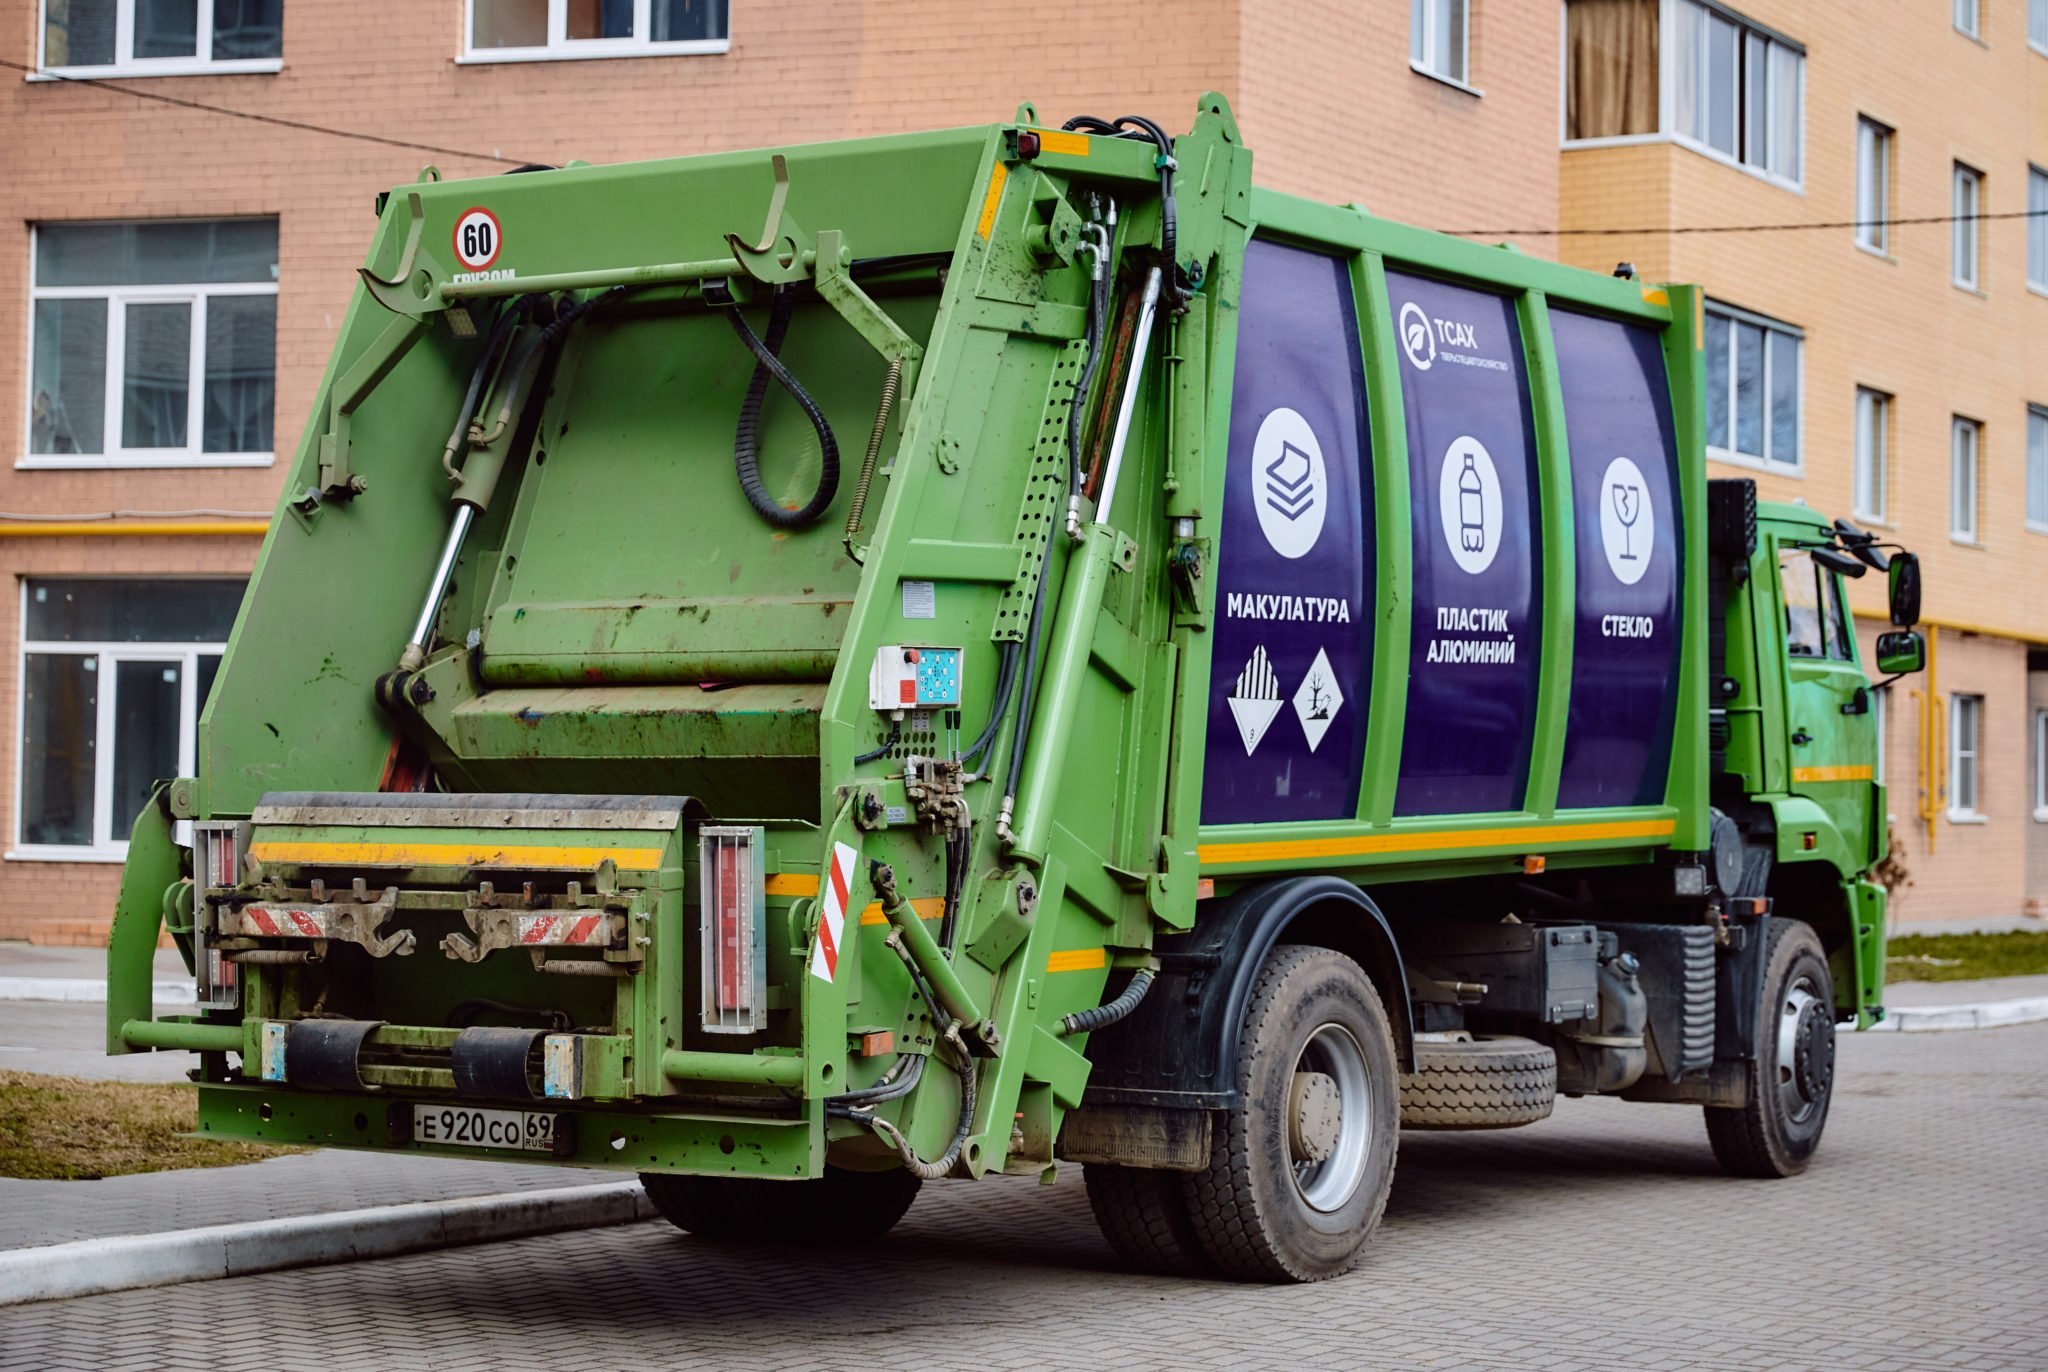 Управление мусоровозом. КАМАЗ 6520 мусоровоз Меркатор. КАМАЗ к5 мусоровоз. МВ-10 мусоровоз. Мусоровоз КАМАЗ зеленый.